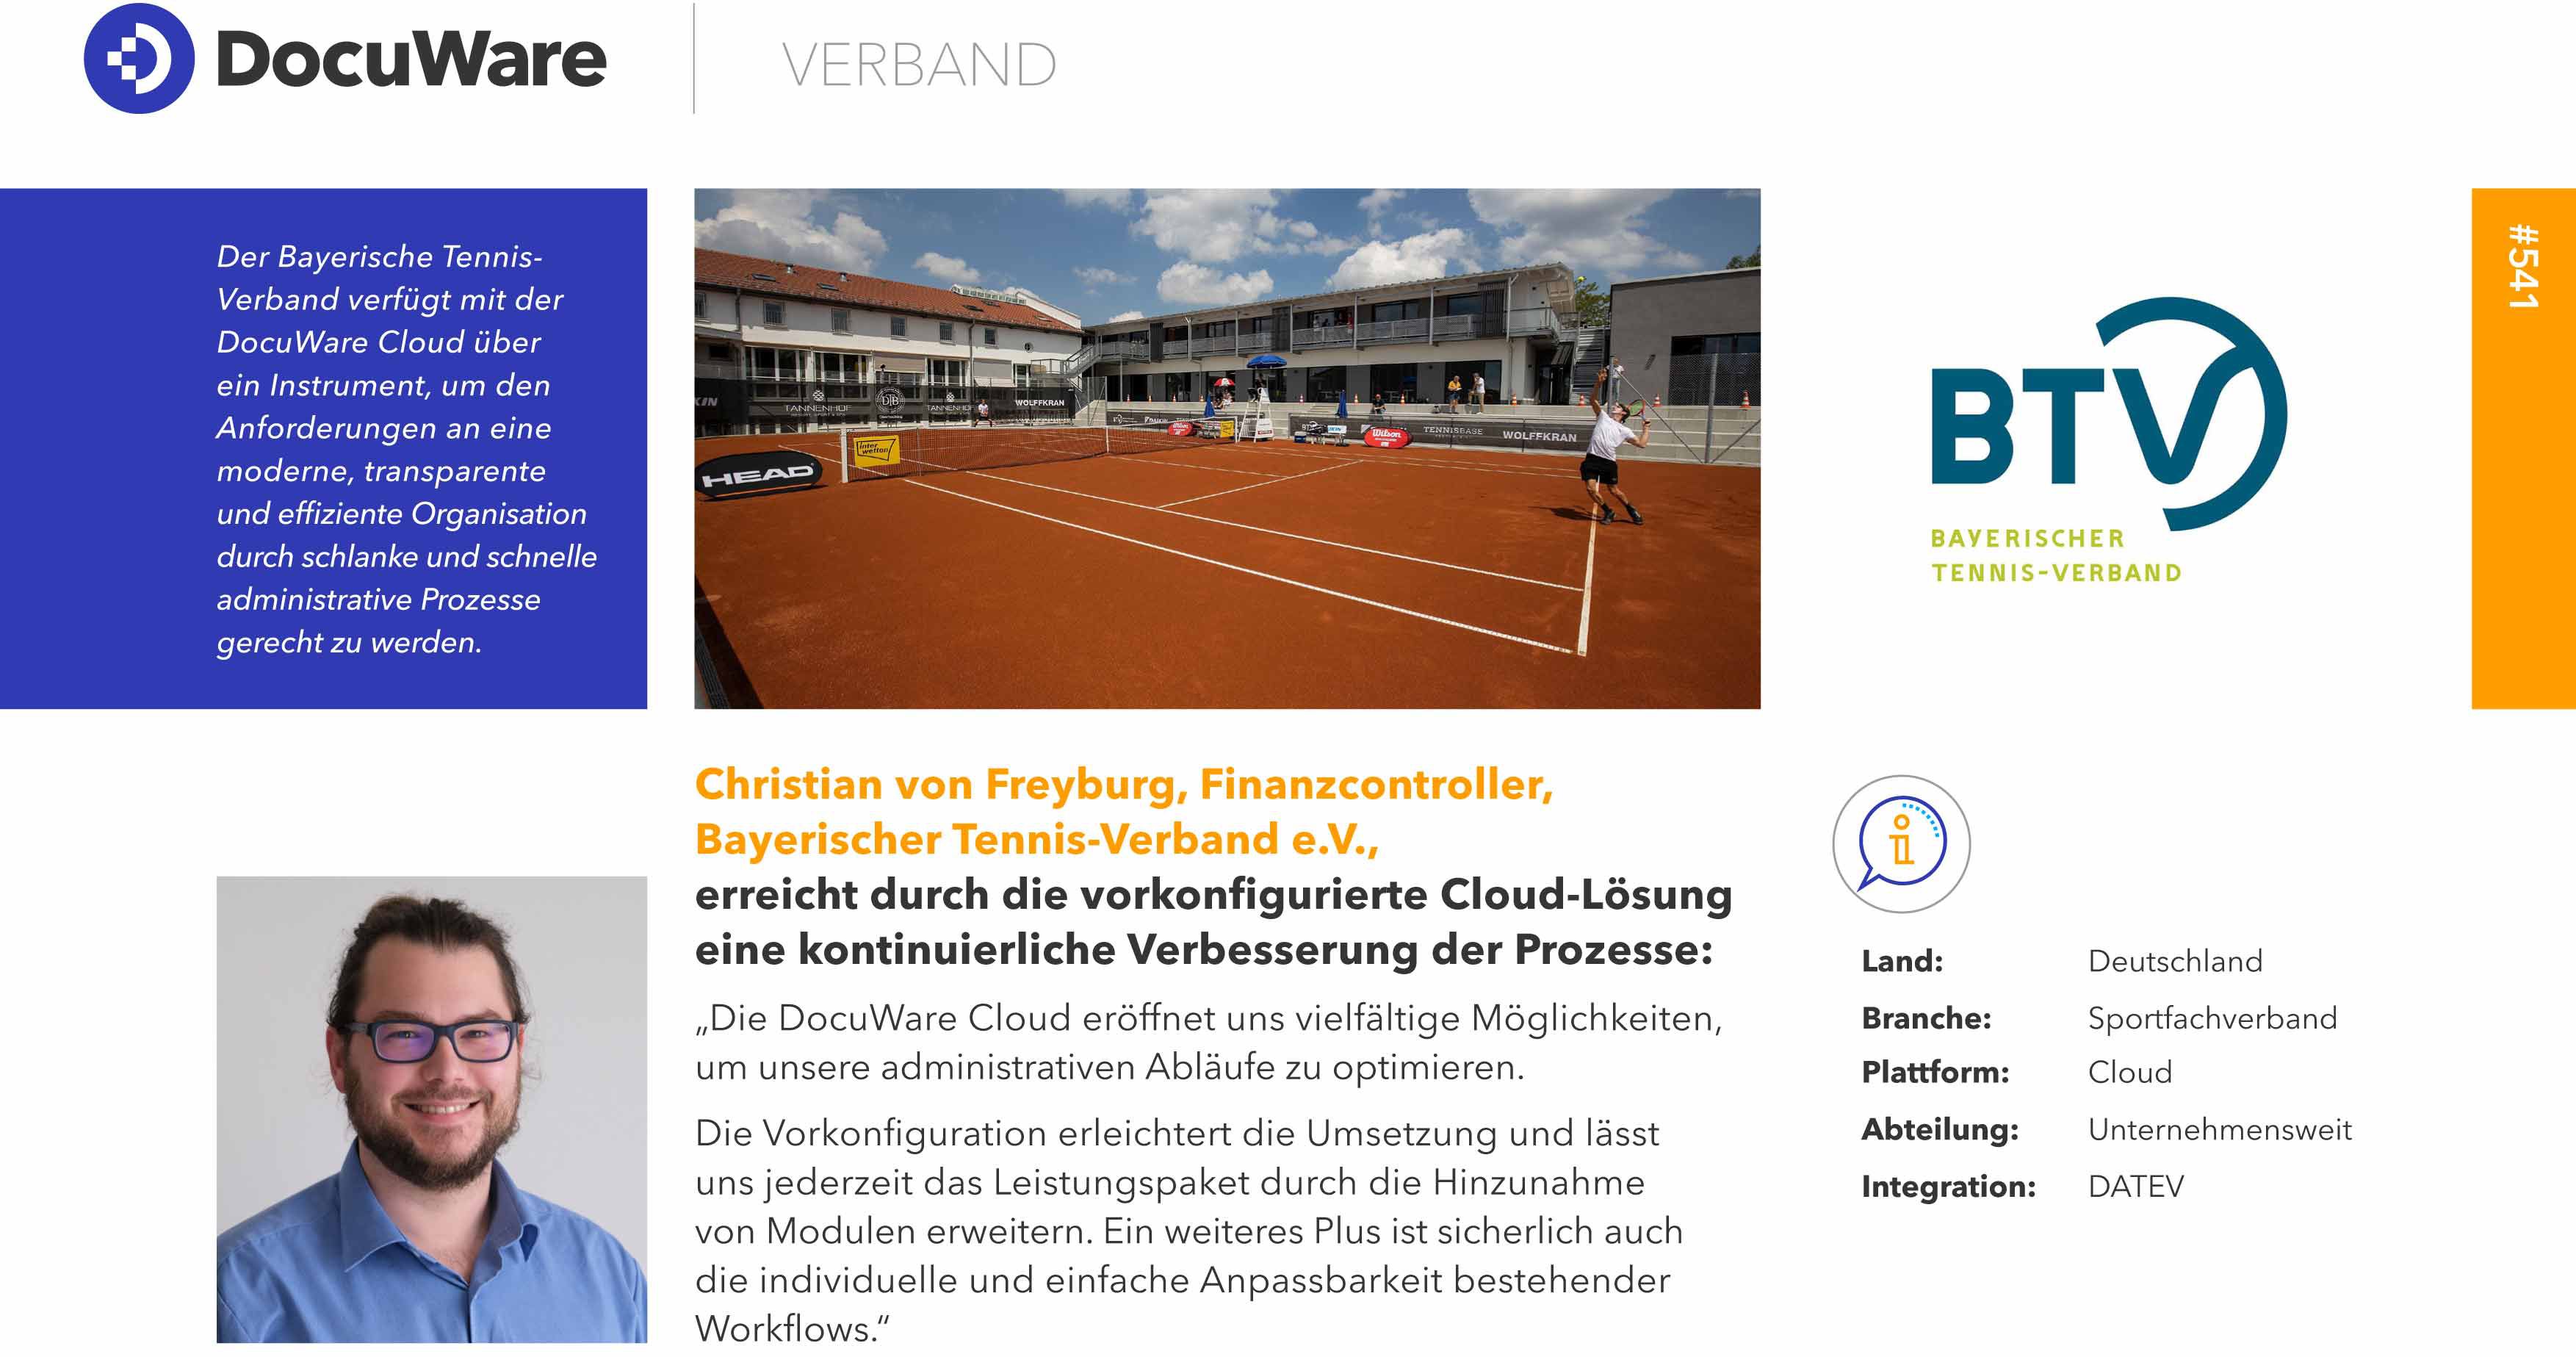 Referenzbericht des Bayrischen Tennis-Verbandes über das Arbeiten mit DocuWare